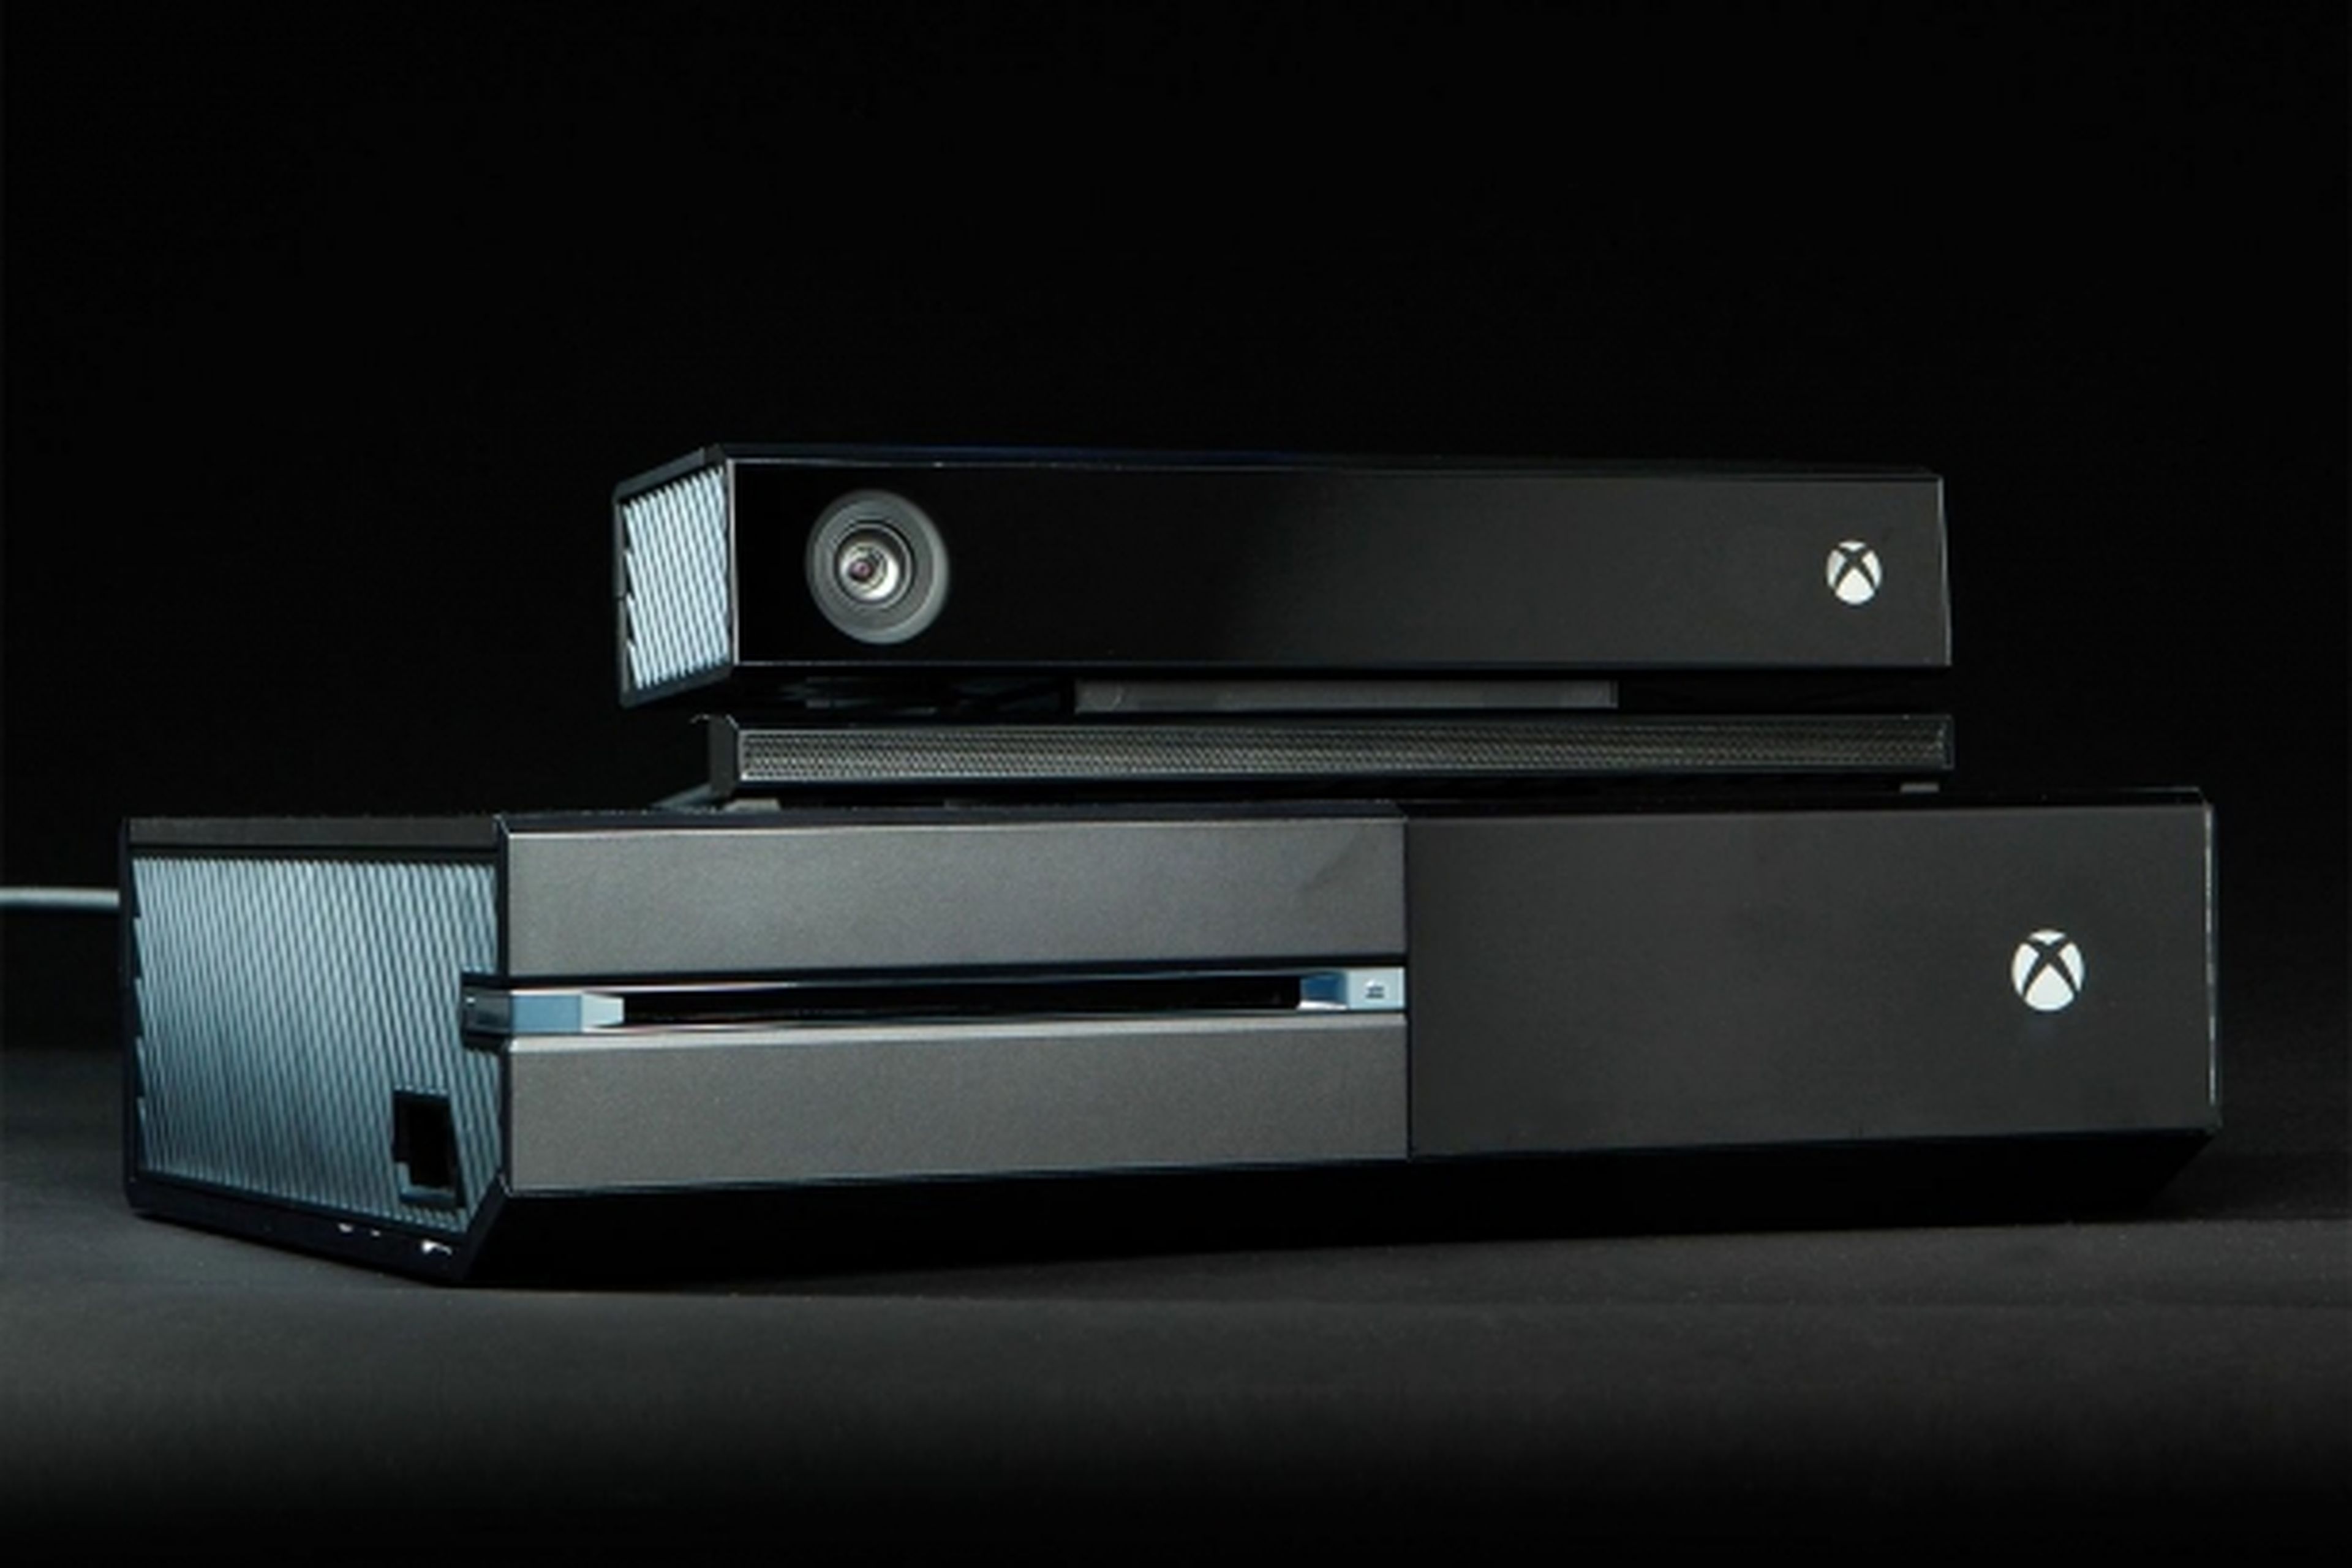 Microsoft descarta lanzar una Xbox One sin Kinect